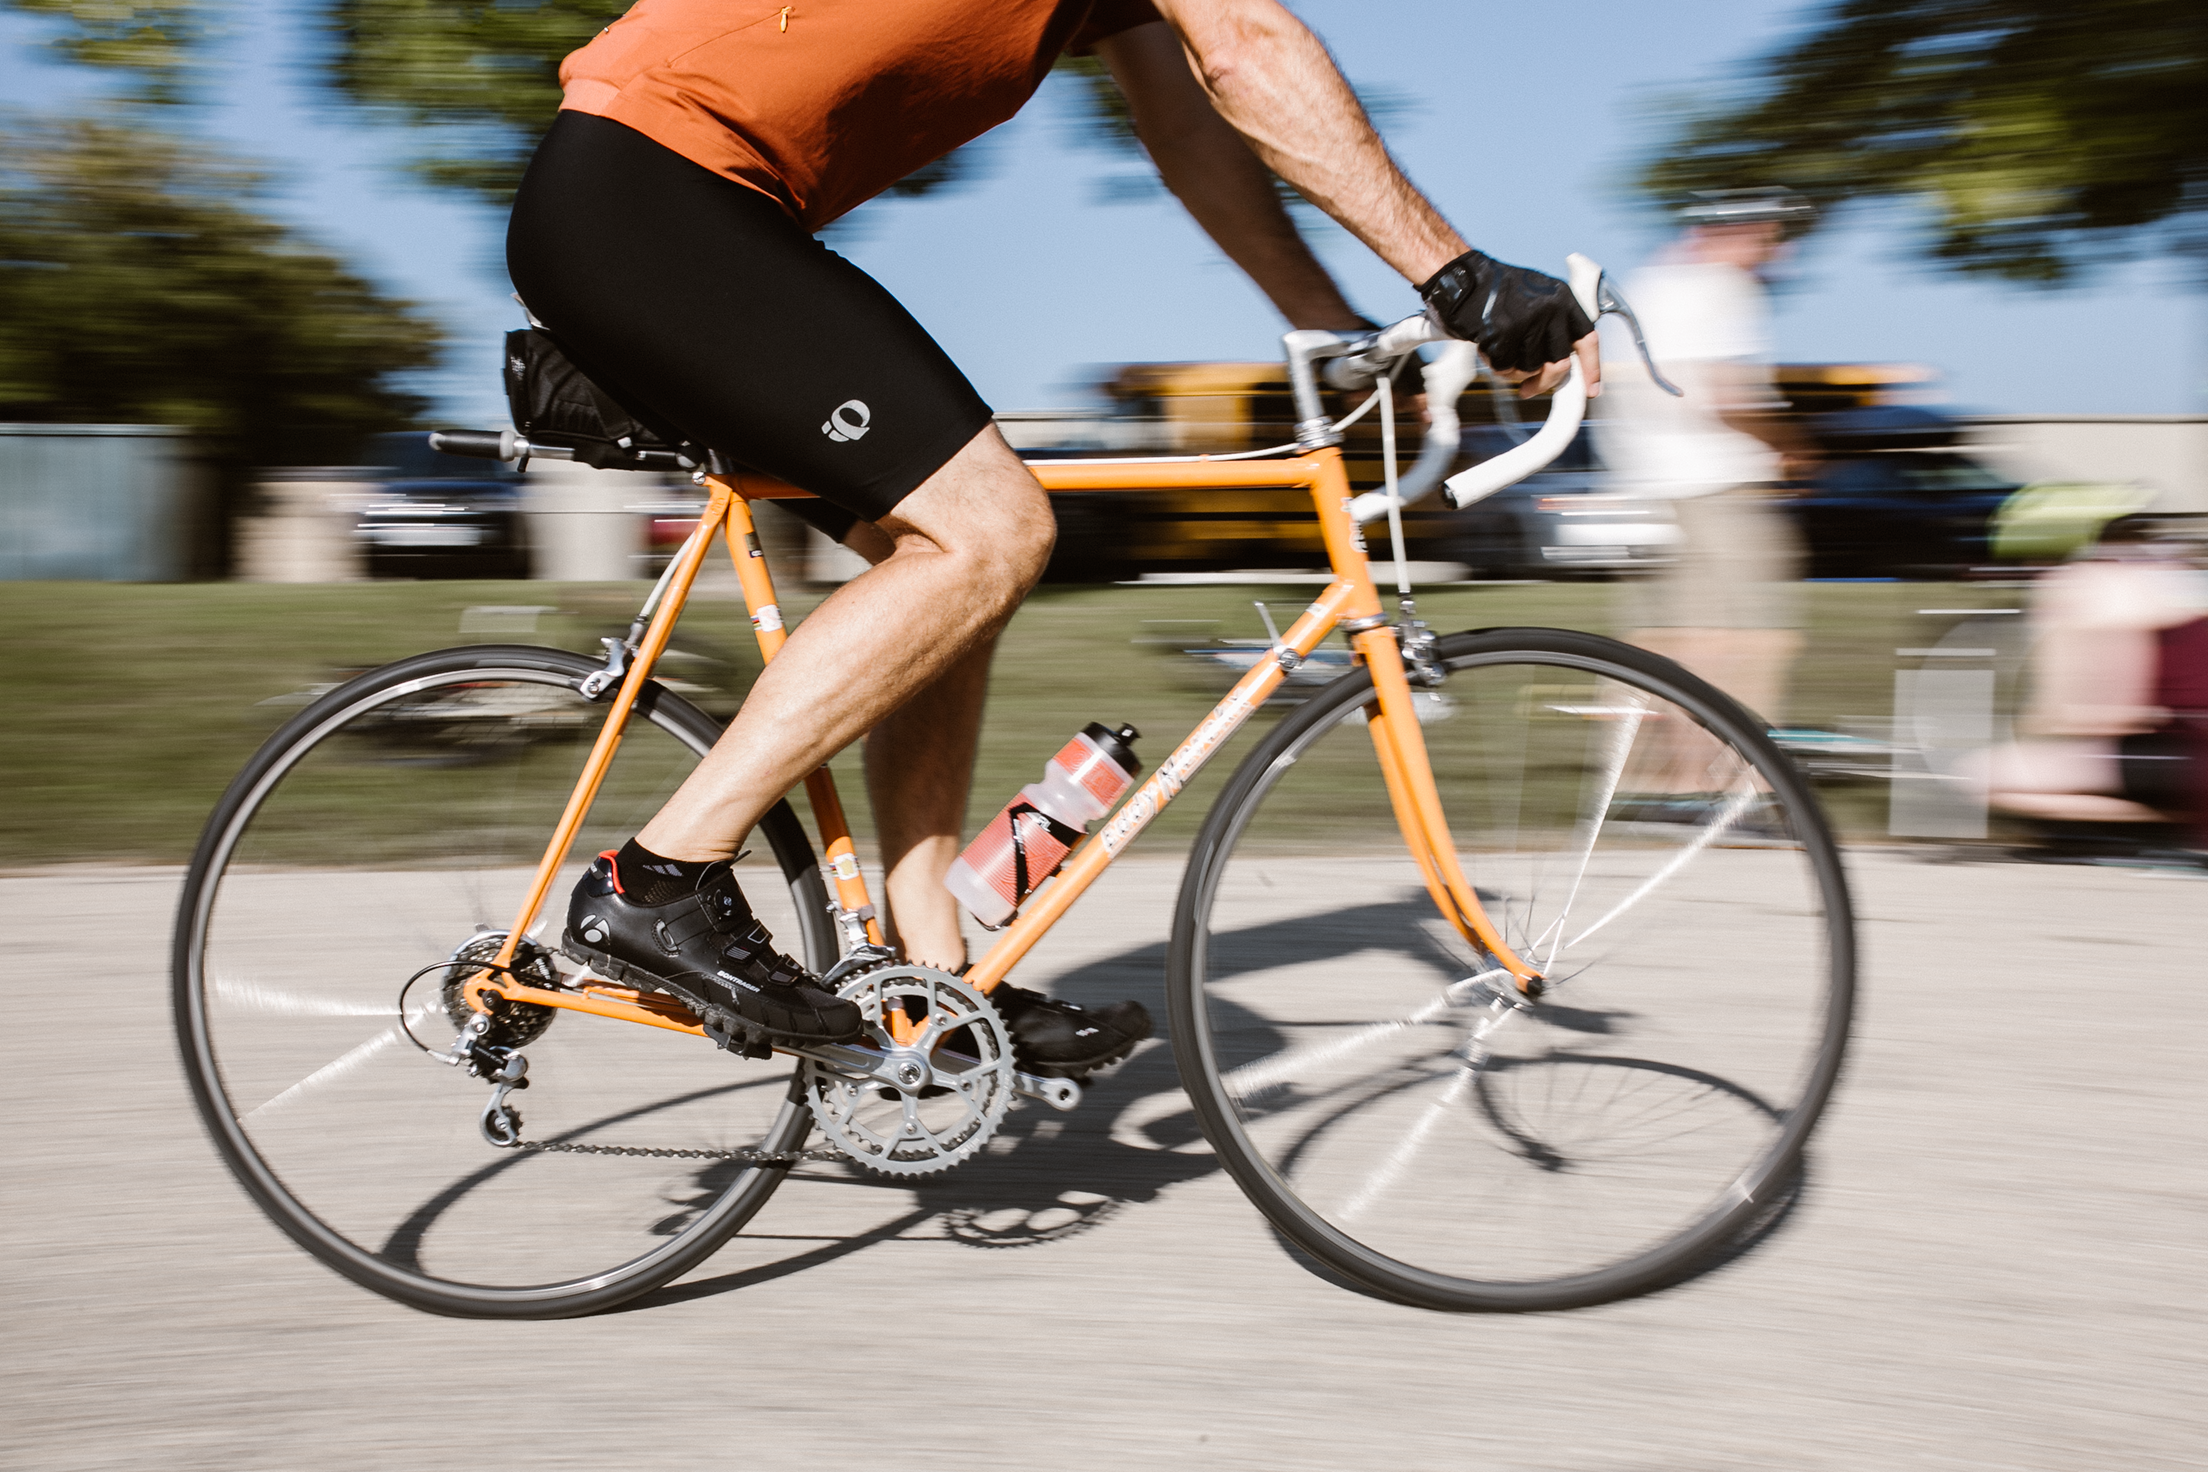 Cyclist on an orange bike racying by.